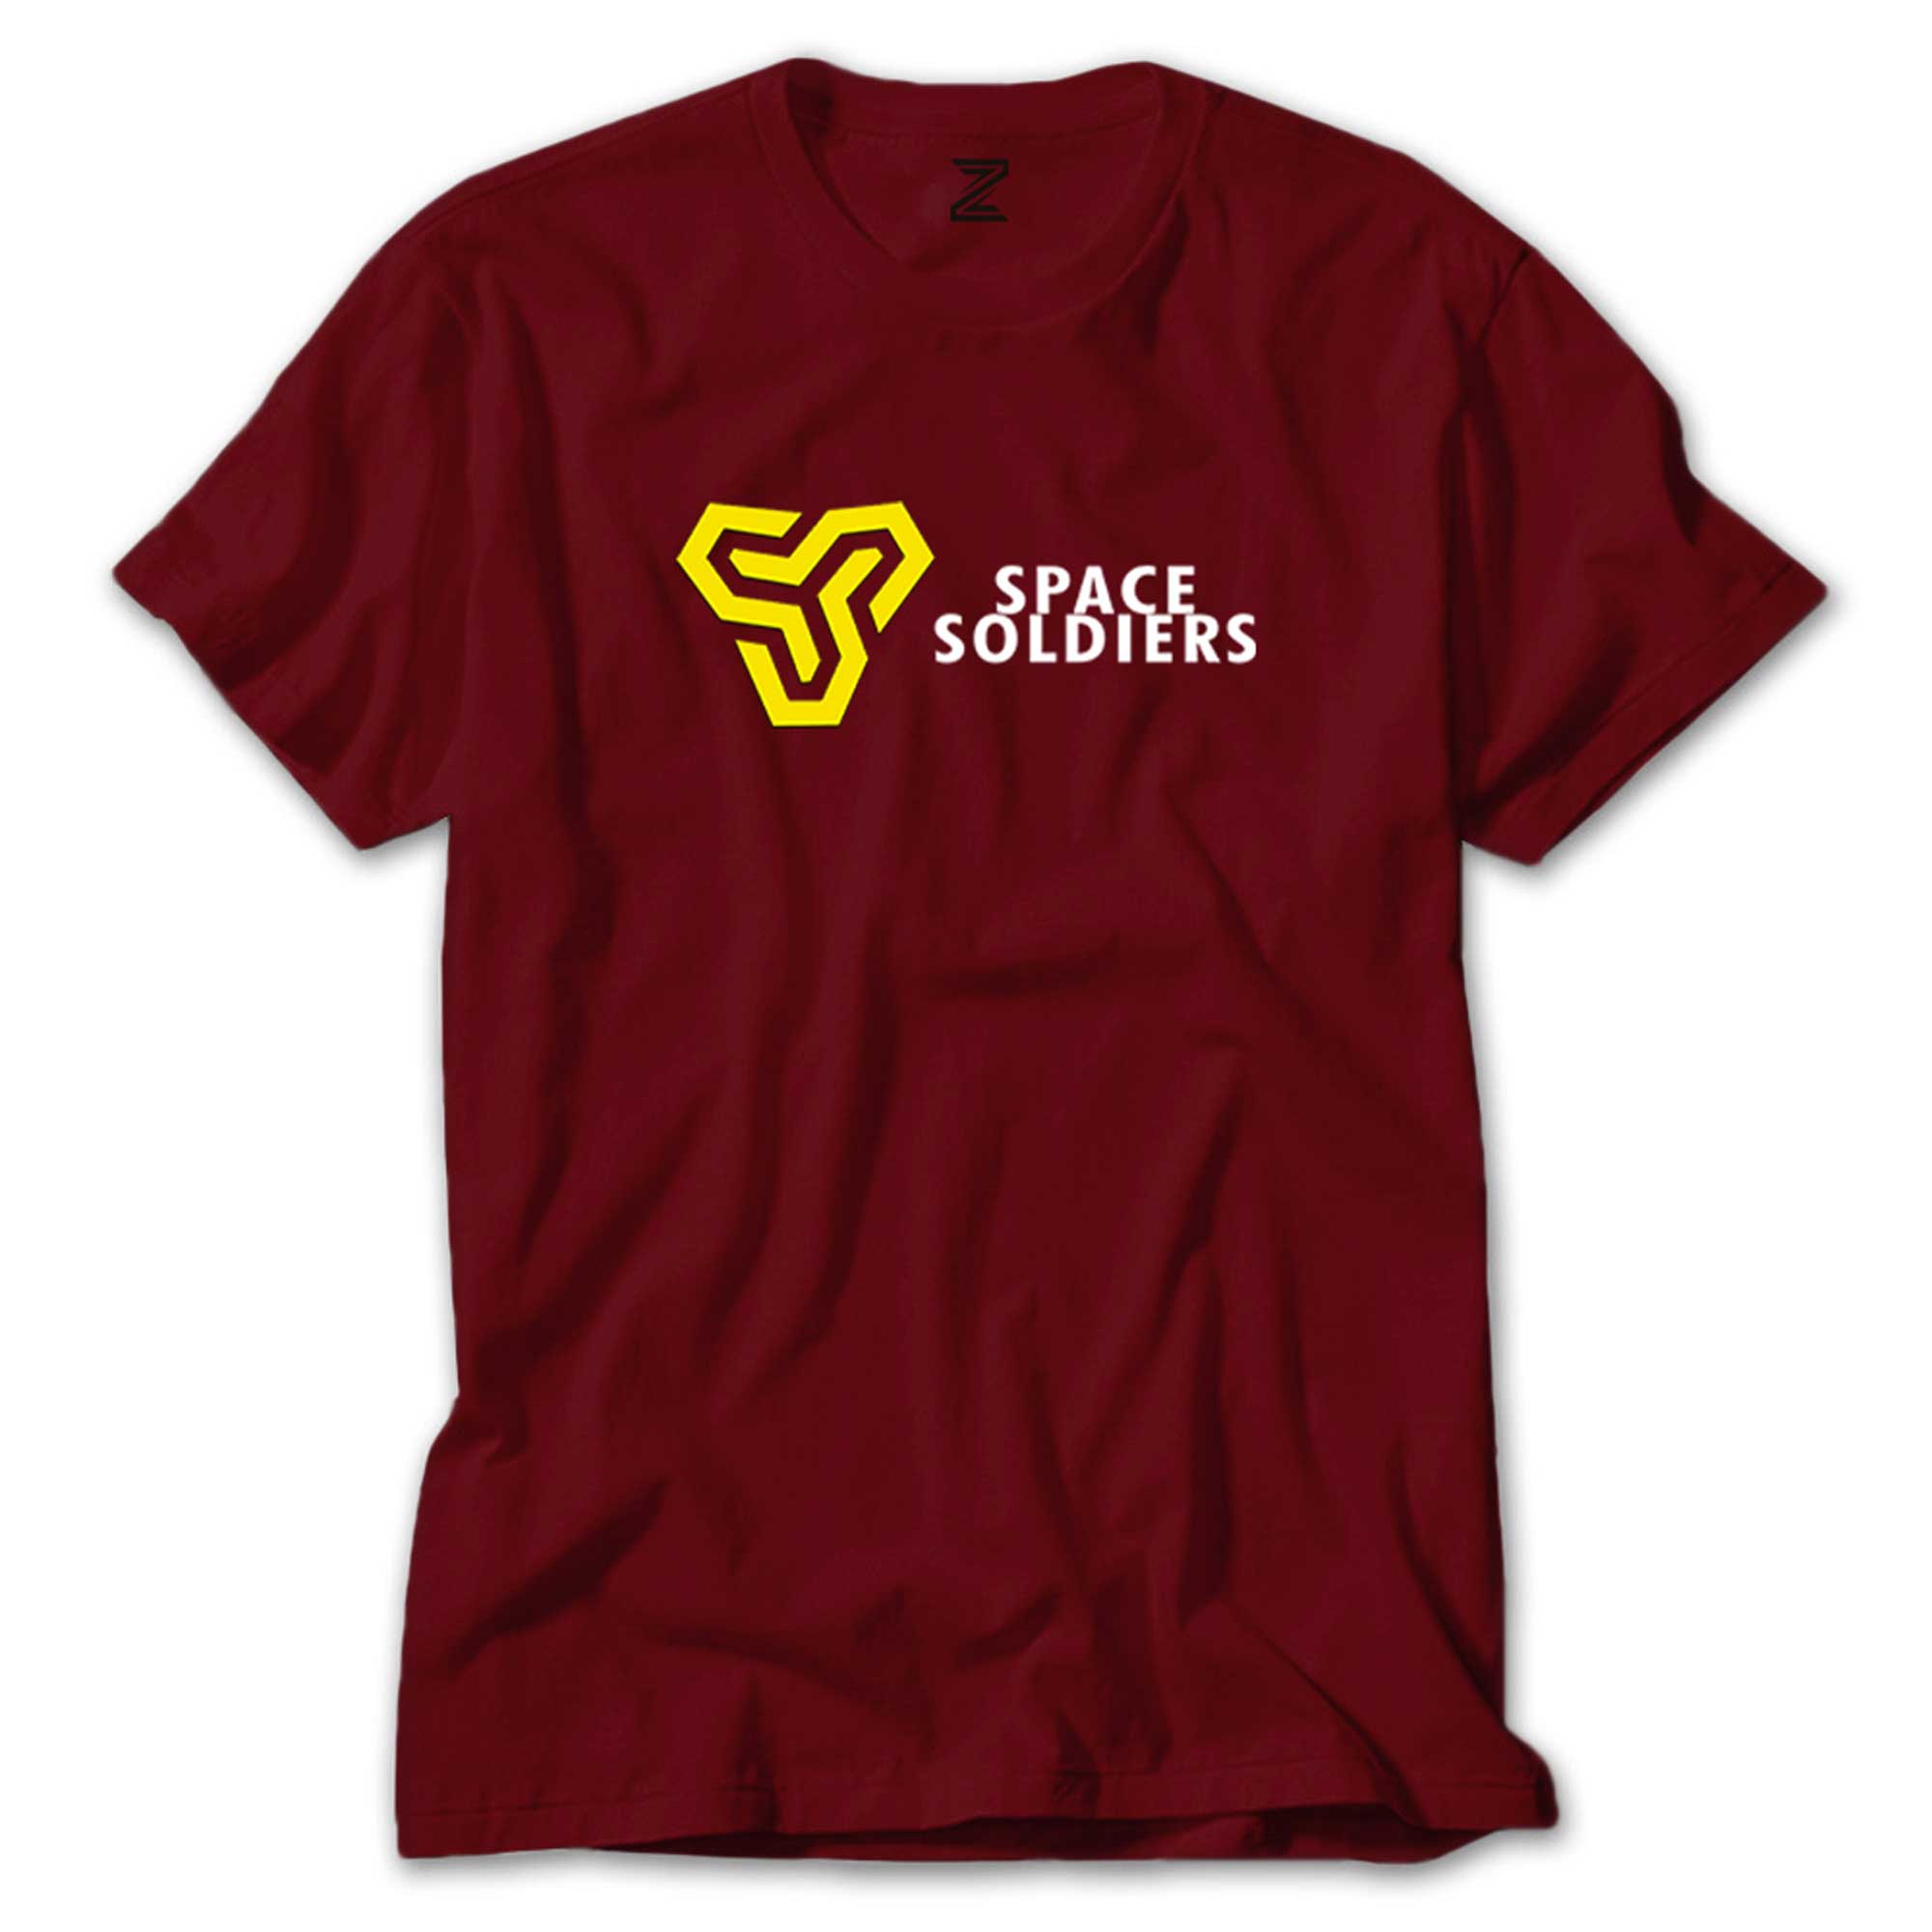 Space Soliders Article Renkli Tişört